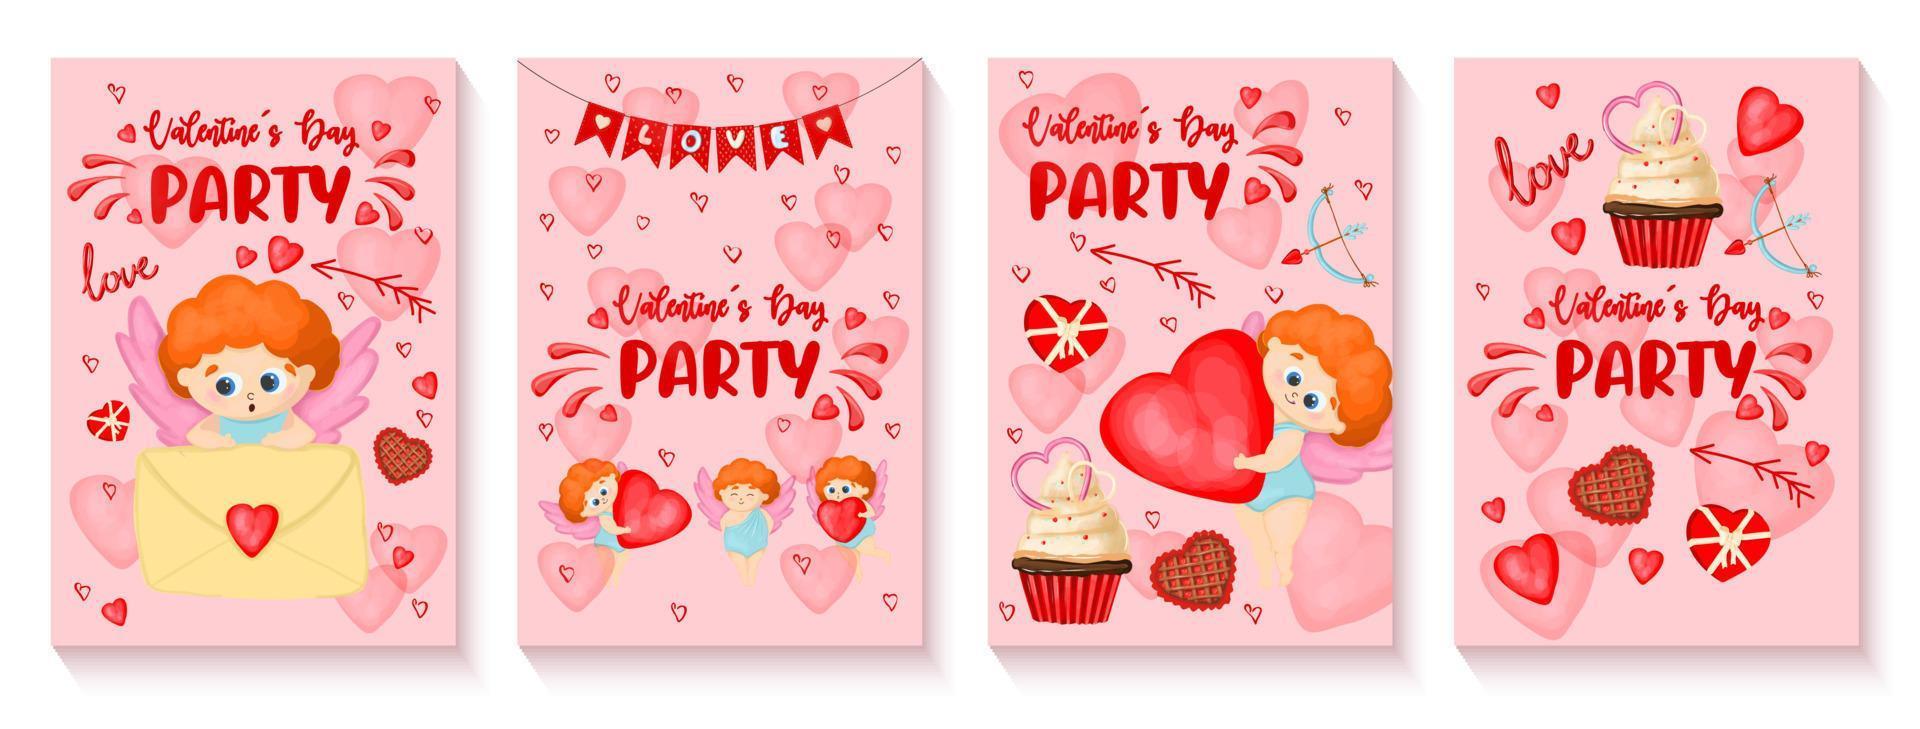 en uppsättning av inbjudan posters för de hjärtans fest på februari 14:e. söt cupid inviterar du till en romantisk fest. vertikal formatera. vektor